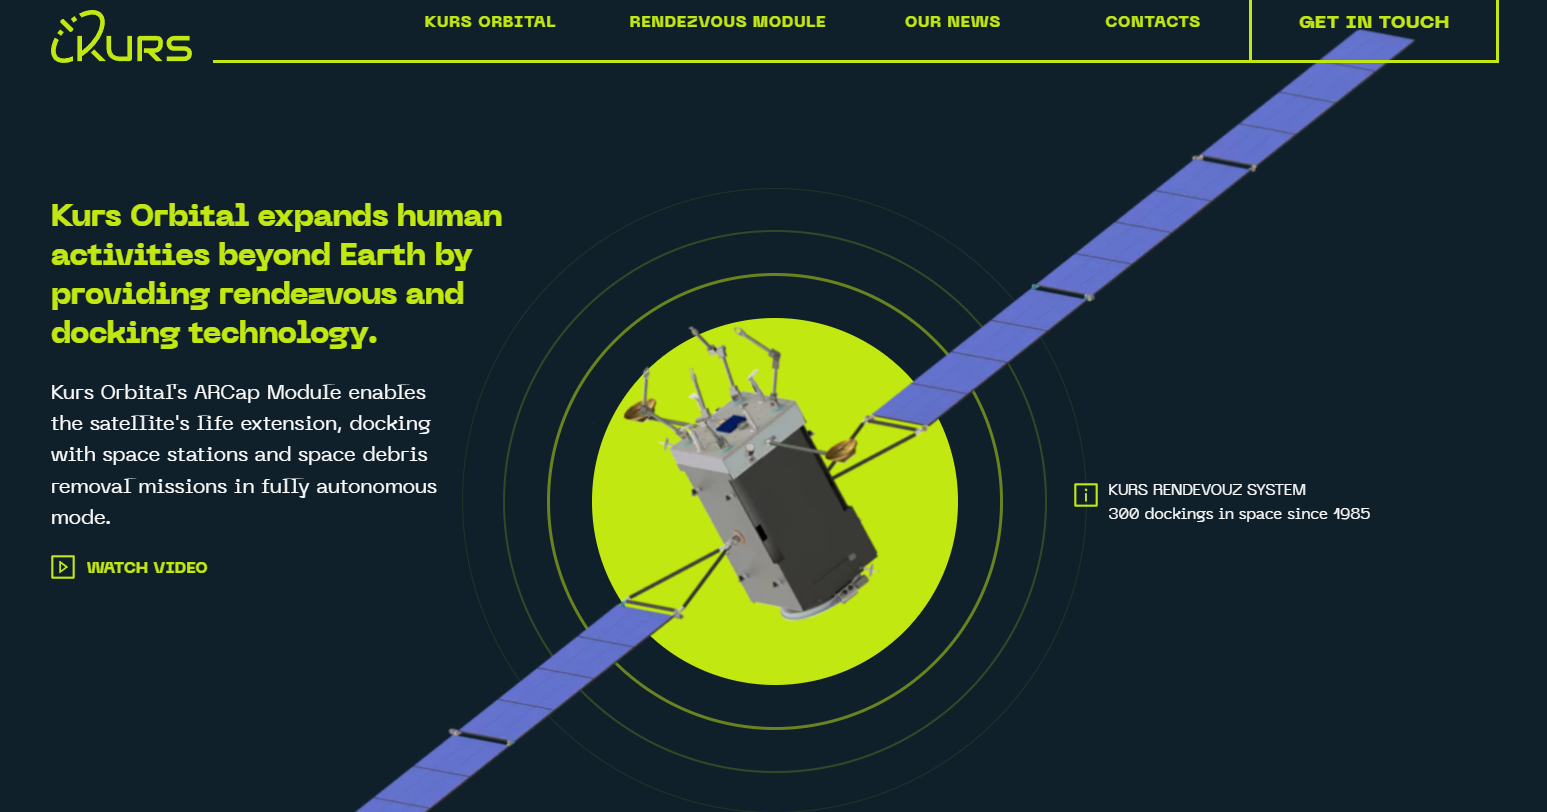 370万ユーロ調達、宇宙開発事業の問題解決に挑むウクライナKurs Orbital